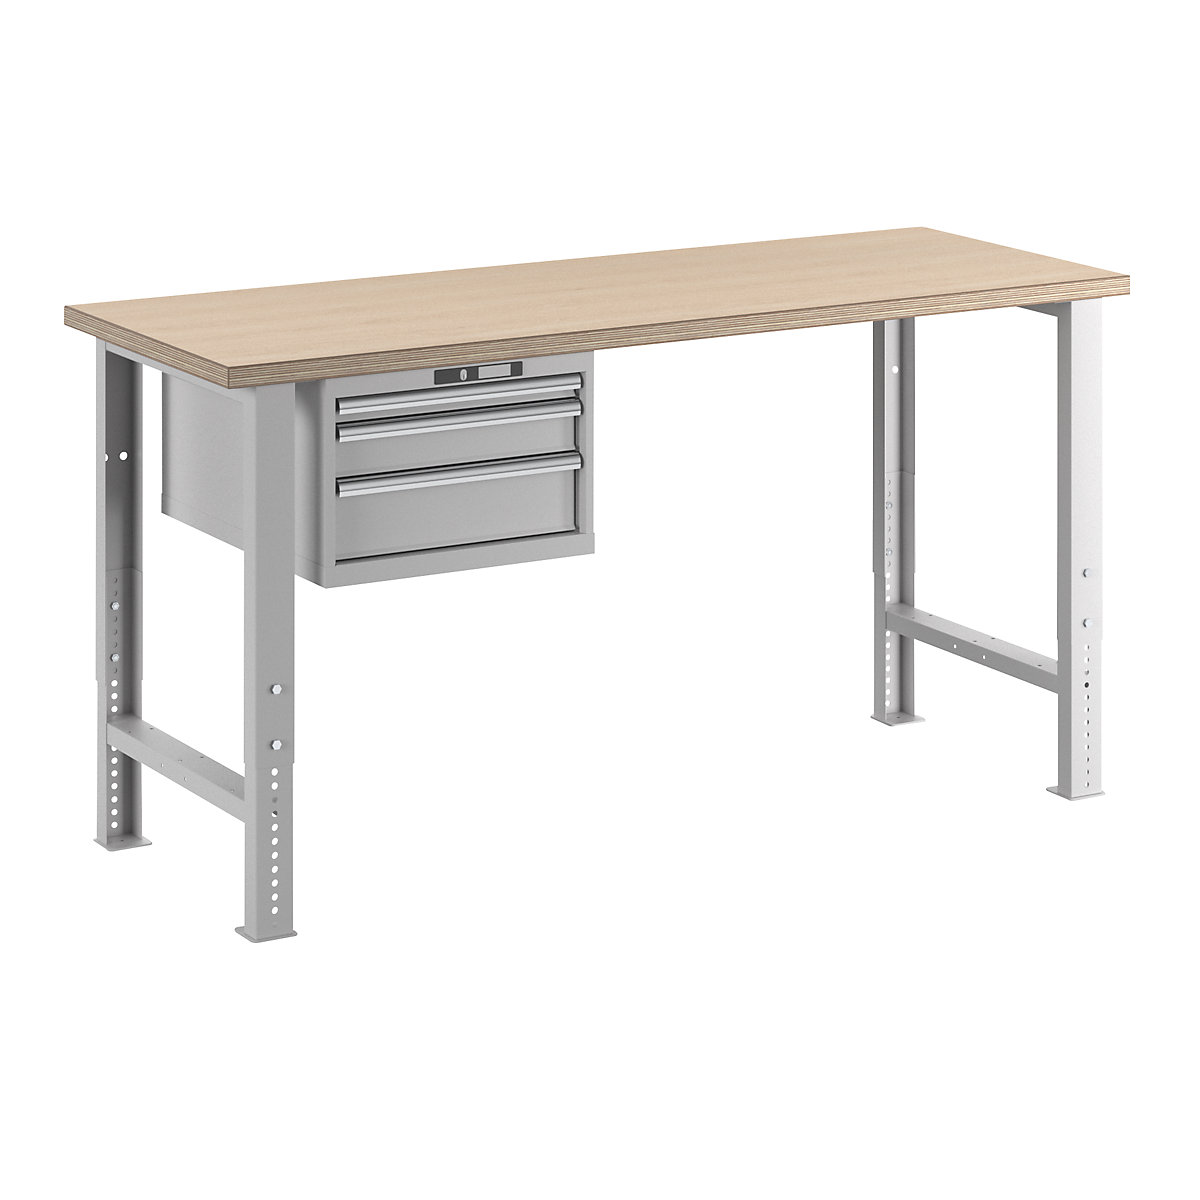 Dielenský stôl v stavebnicovom systéme – LISTA, výška 740 – 1090 mm, závesná skriňa, 3 zásuvky, svetlošedá, šírka stola 2000 mm-15